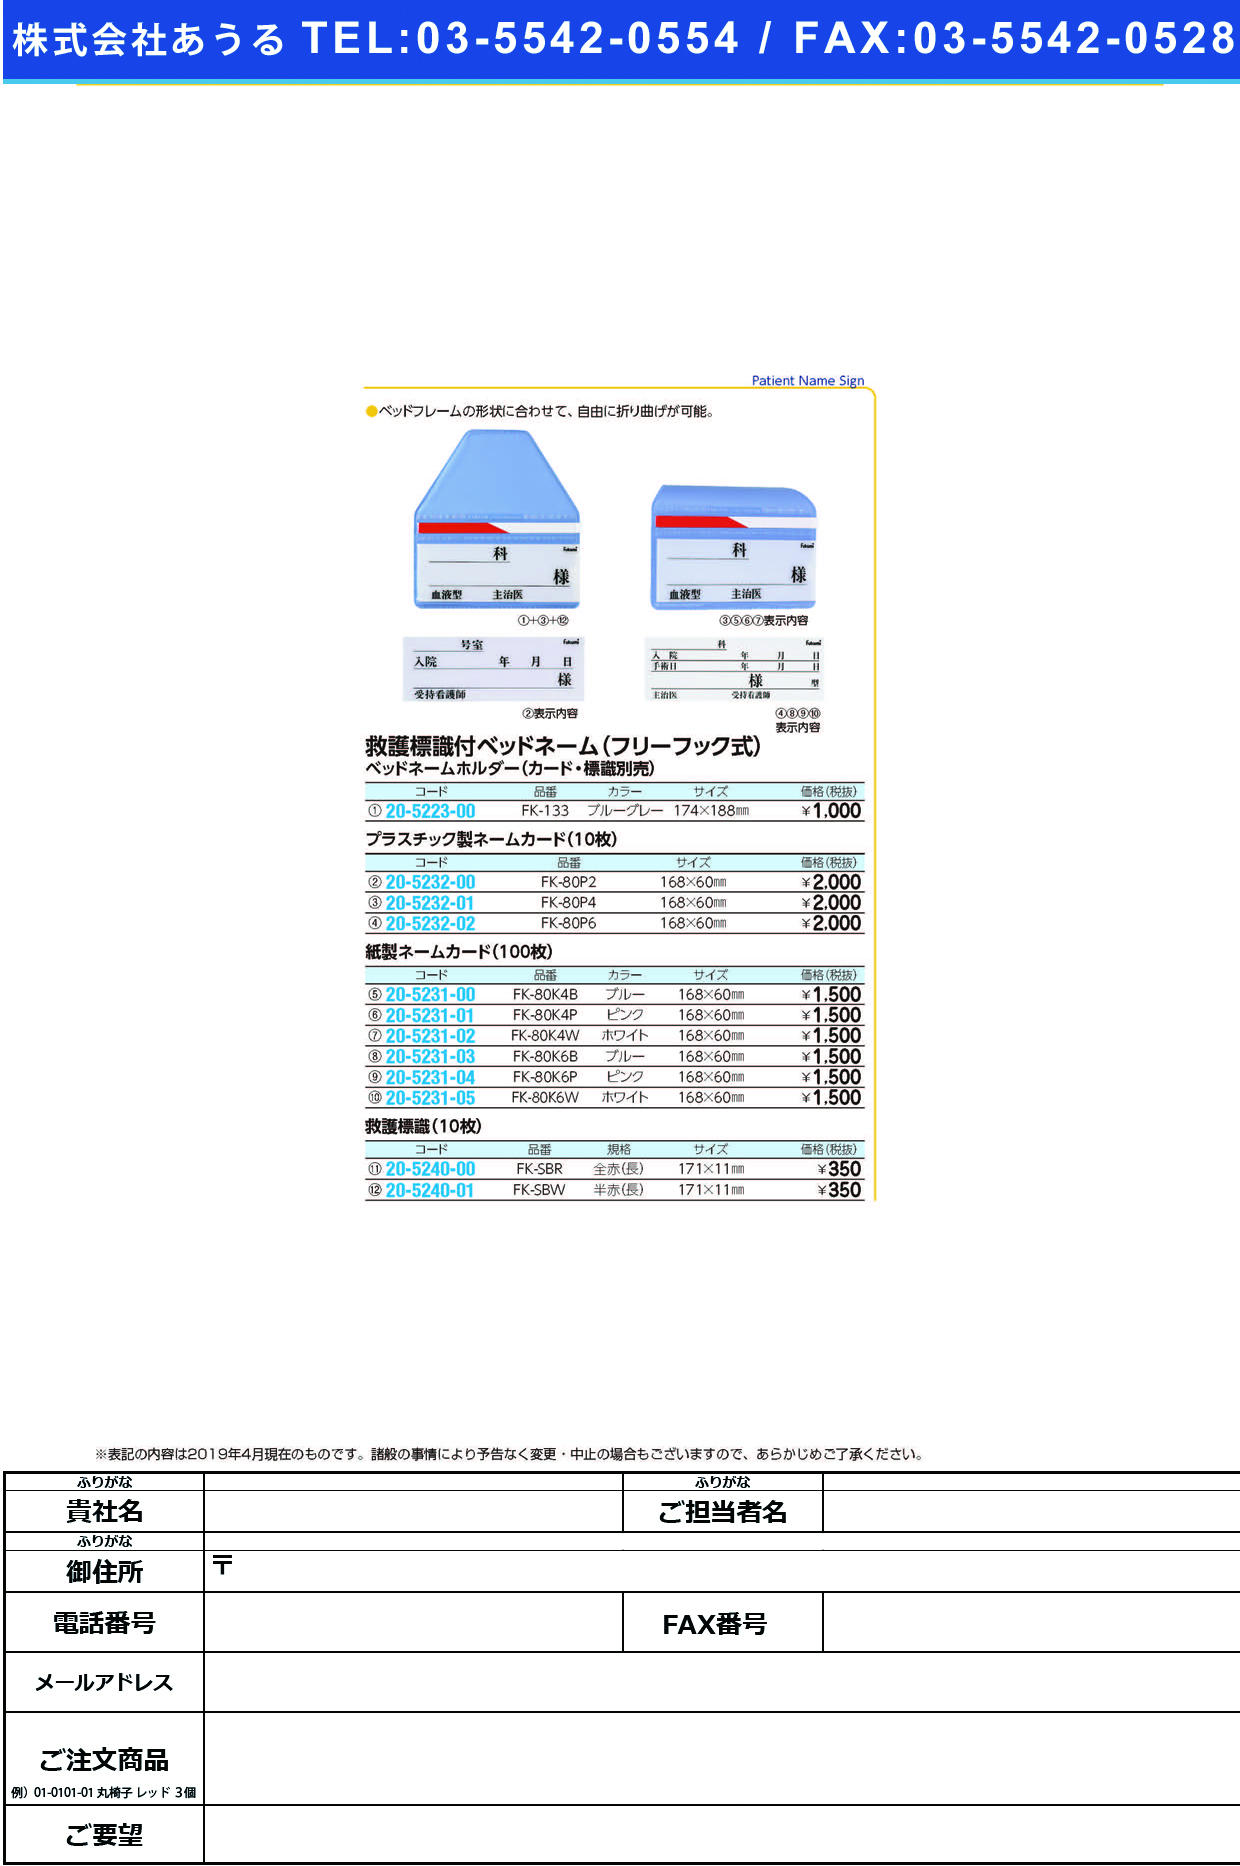 (20-5223-00)ベッドネームホルダー FK-133(ﾌﾘｰﾌｯｸｼｷ) ﾍﾞｯﾄﾞﾈｰﾑﾎﾙﾀﾞｰ【1枚単位】【2019年カタログ商品】